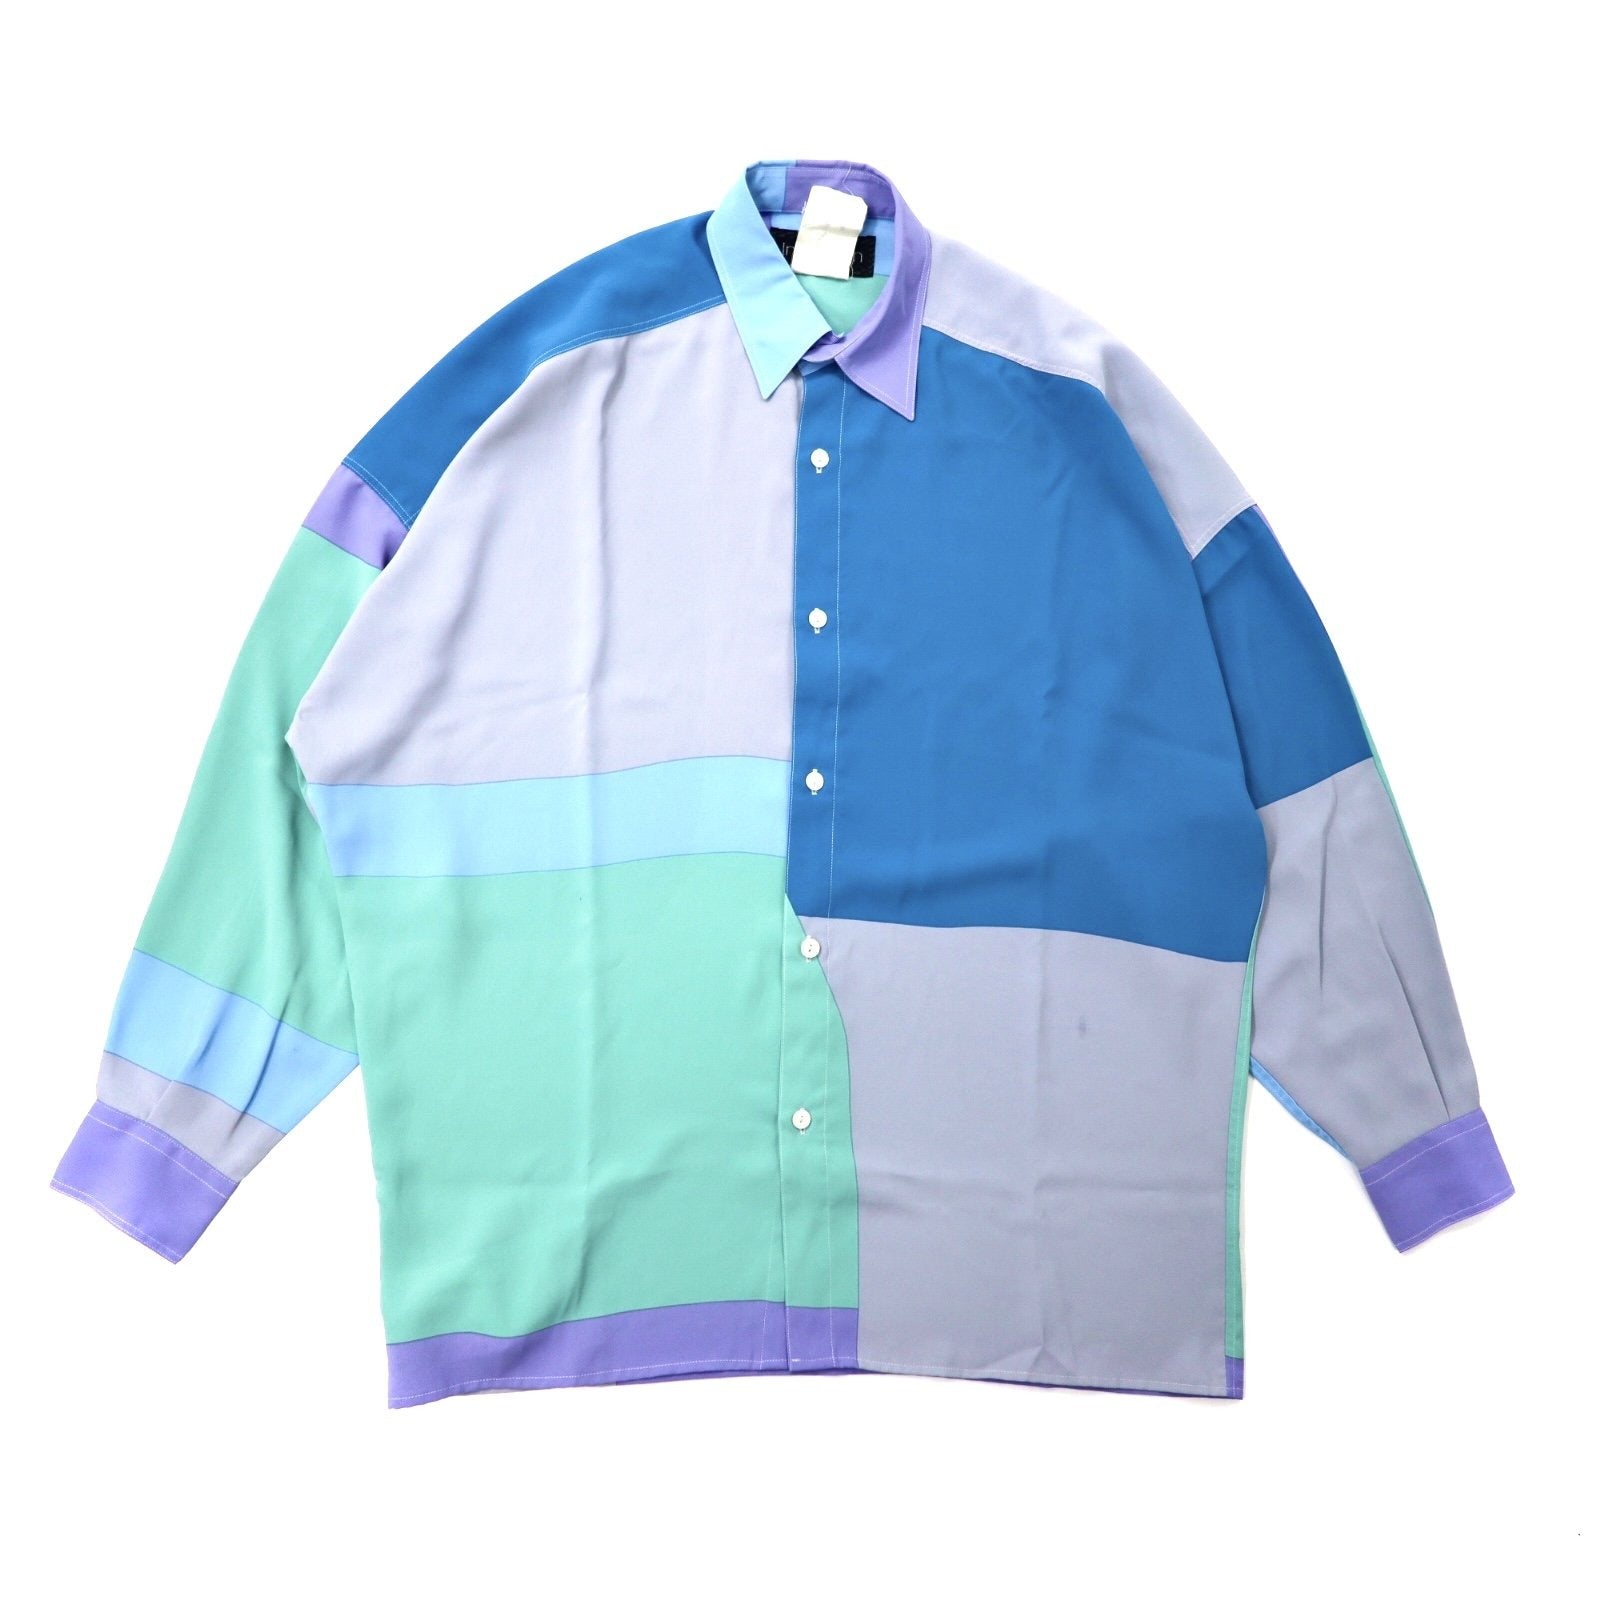 Inception ポリシャツ 46 ブルー クレイジーパターン